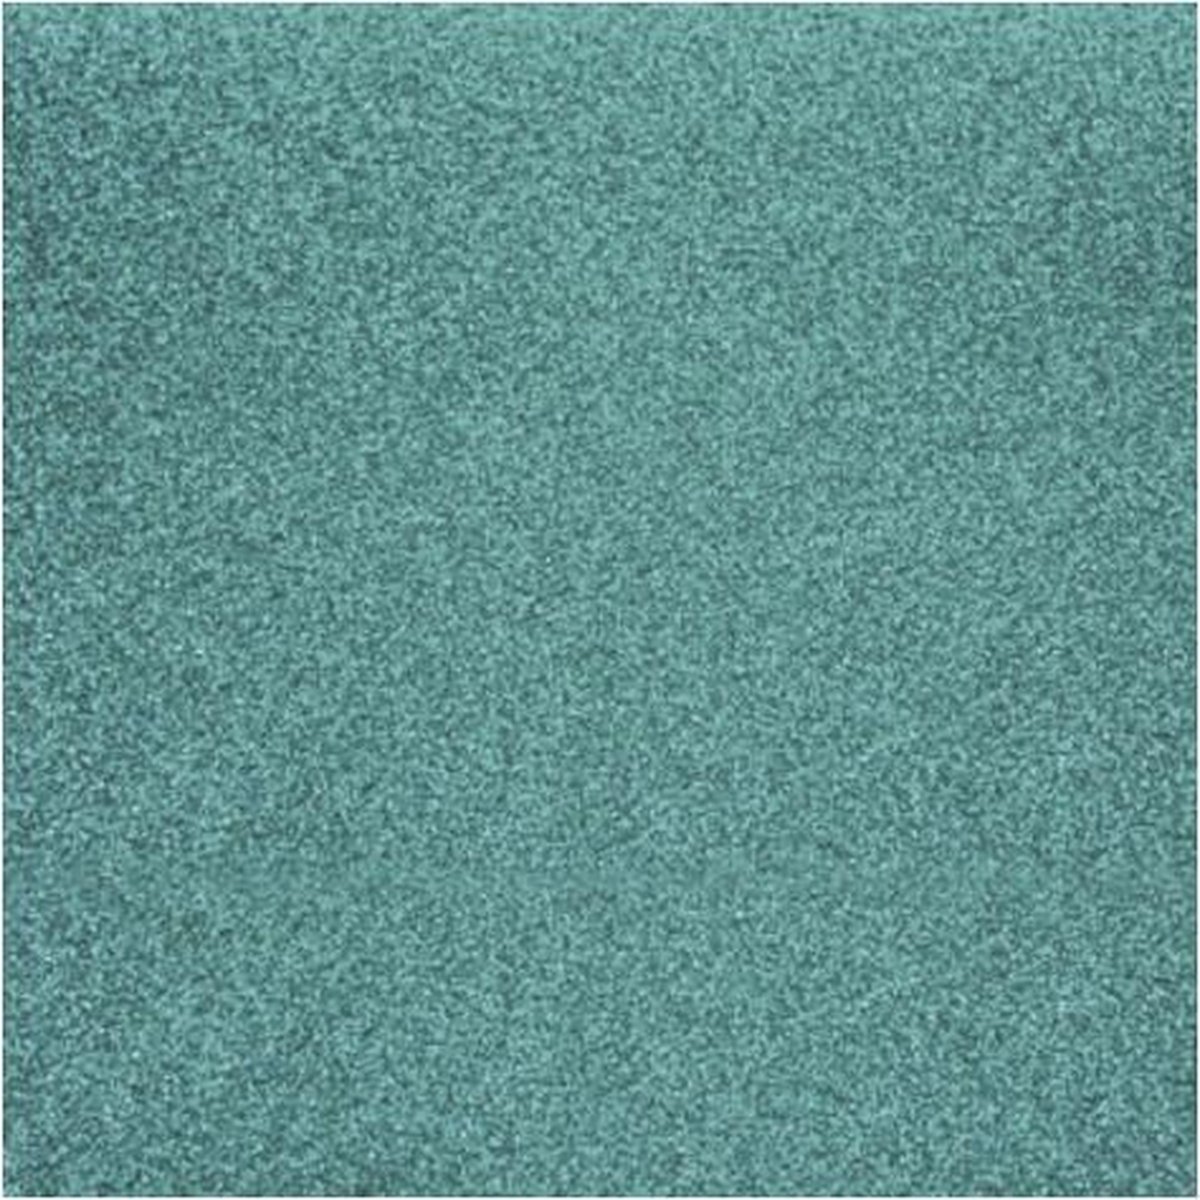 Afbeelding van product Rayher hobby materialen  3x stuks turquoise blauw glitter papier vellen 30.5 x 30.5 cmm - Hobby scrapbooking artikelen